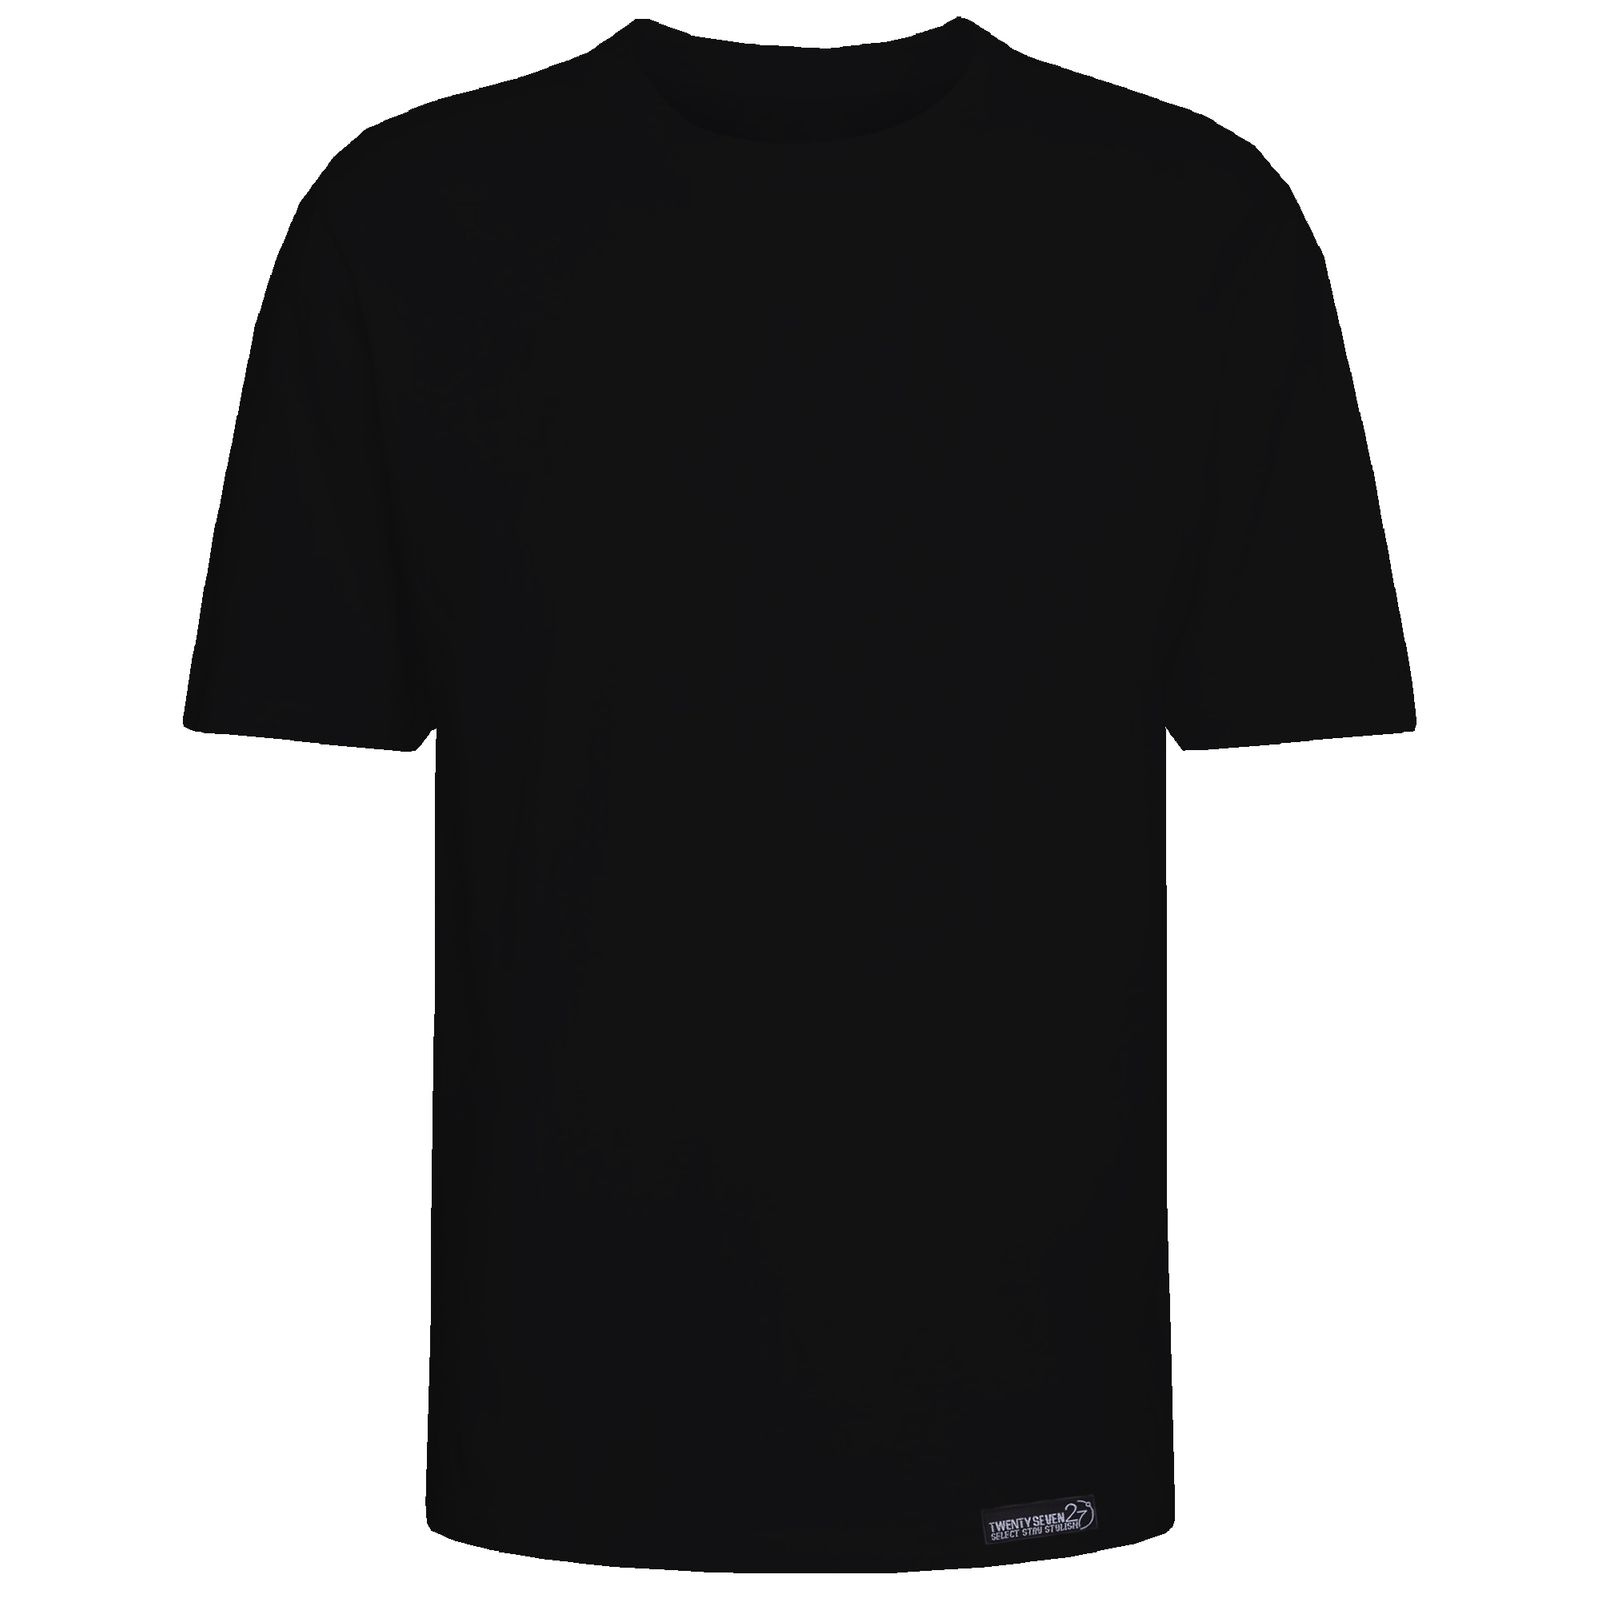 تی شرت آستین کوتاه مردانه 27 مدل simple کد KV319 رنگ مشکی -  - 1